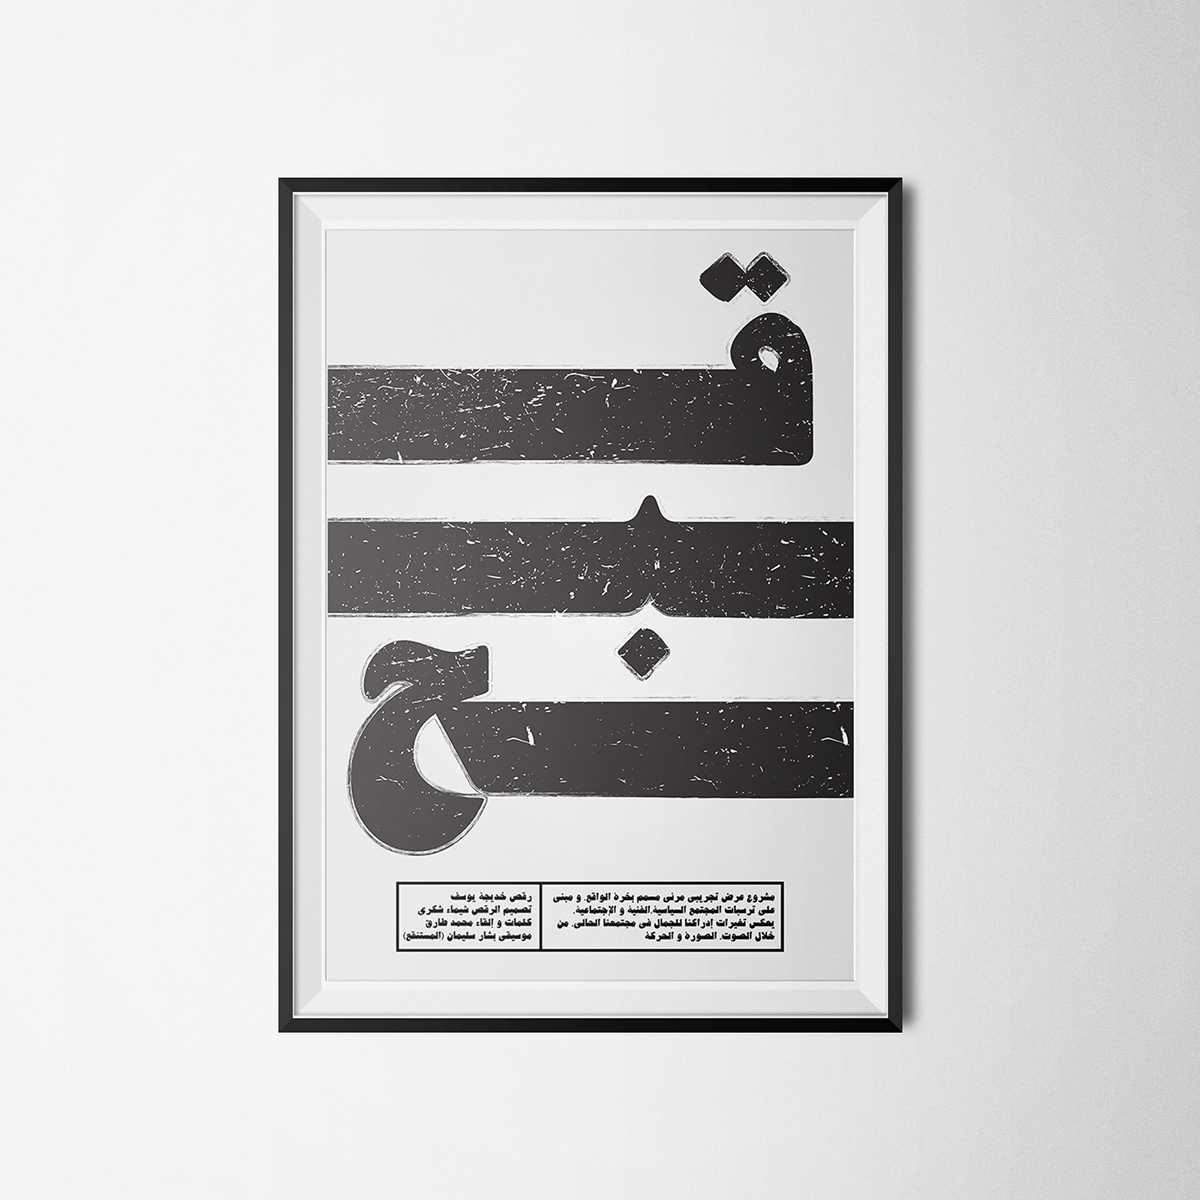 media installation guc Hammoud egypt PERFORMING poster design